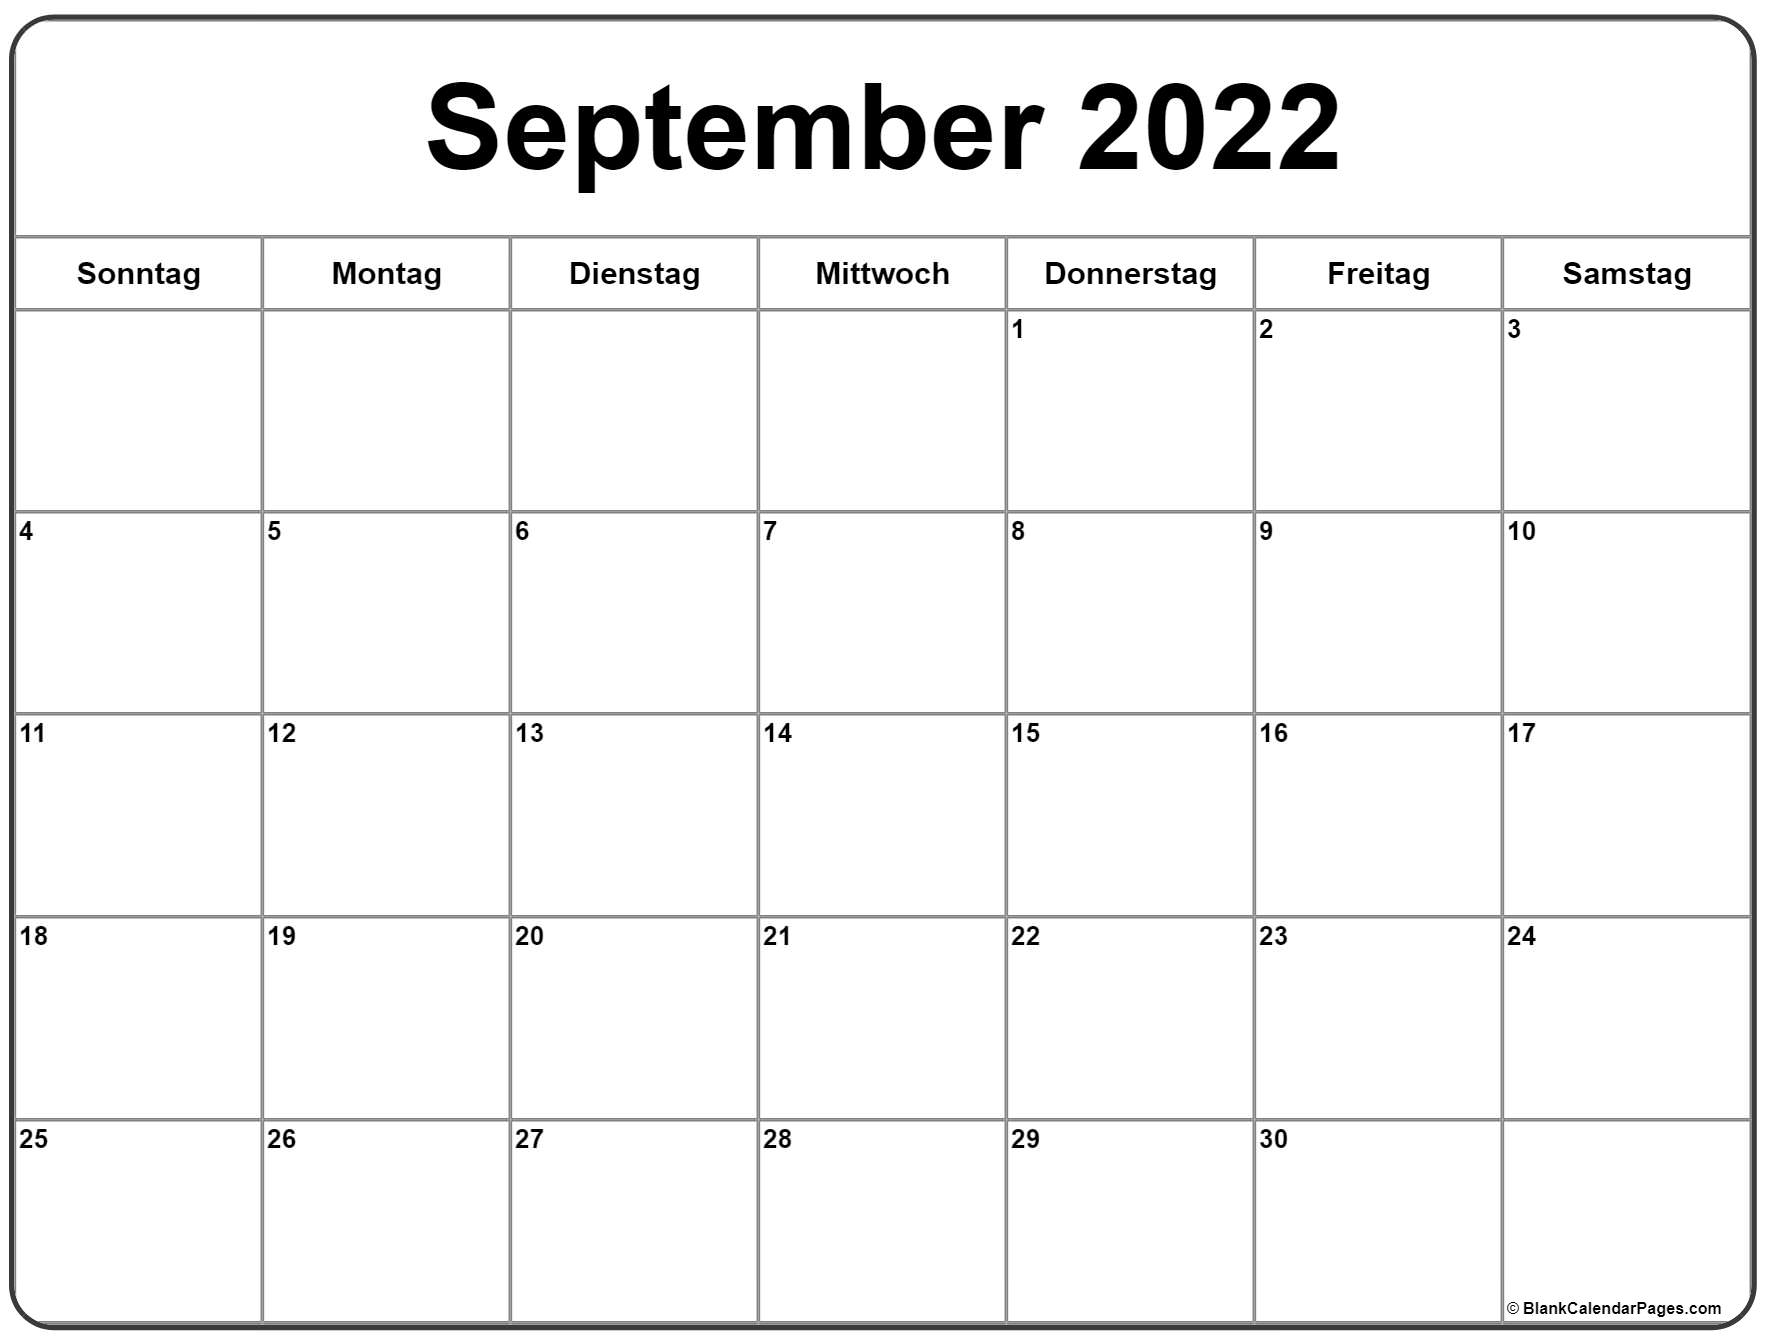 September 2022 Kalender Auf Deutsch | Kalender 2022